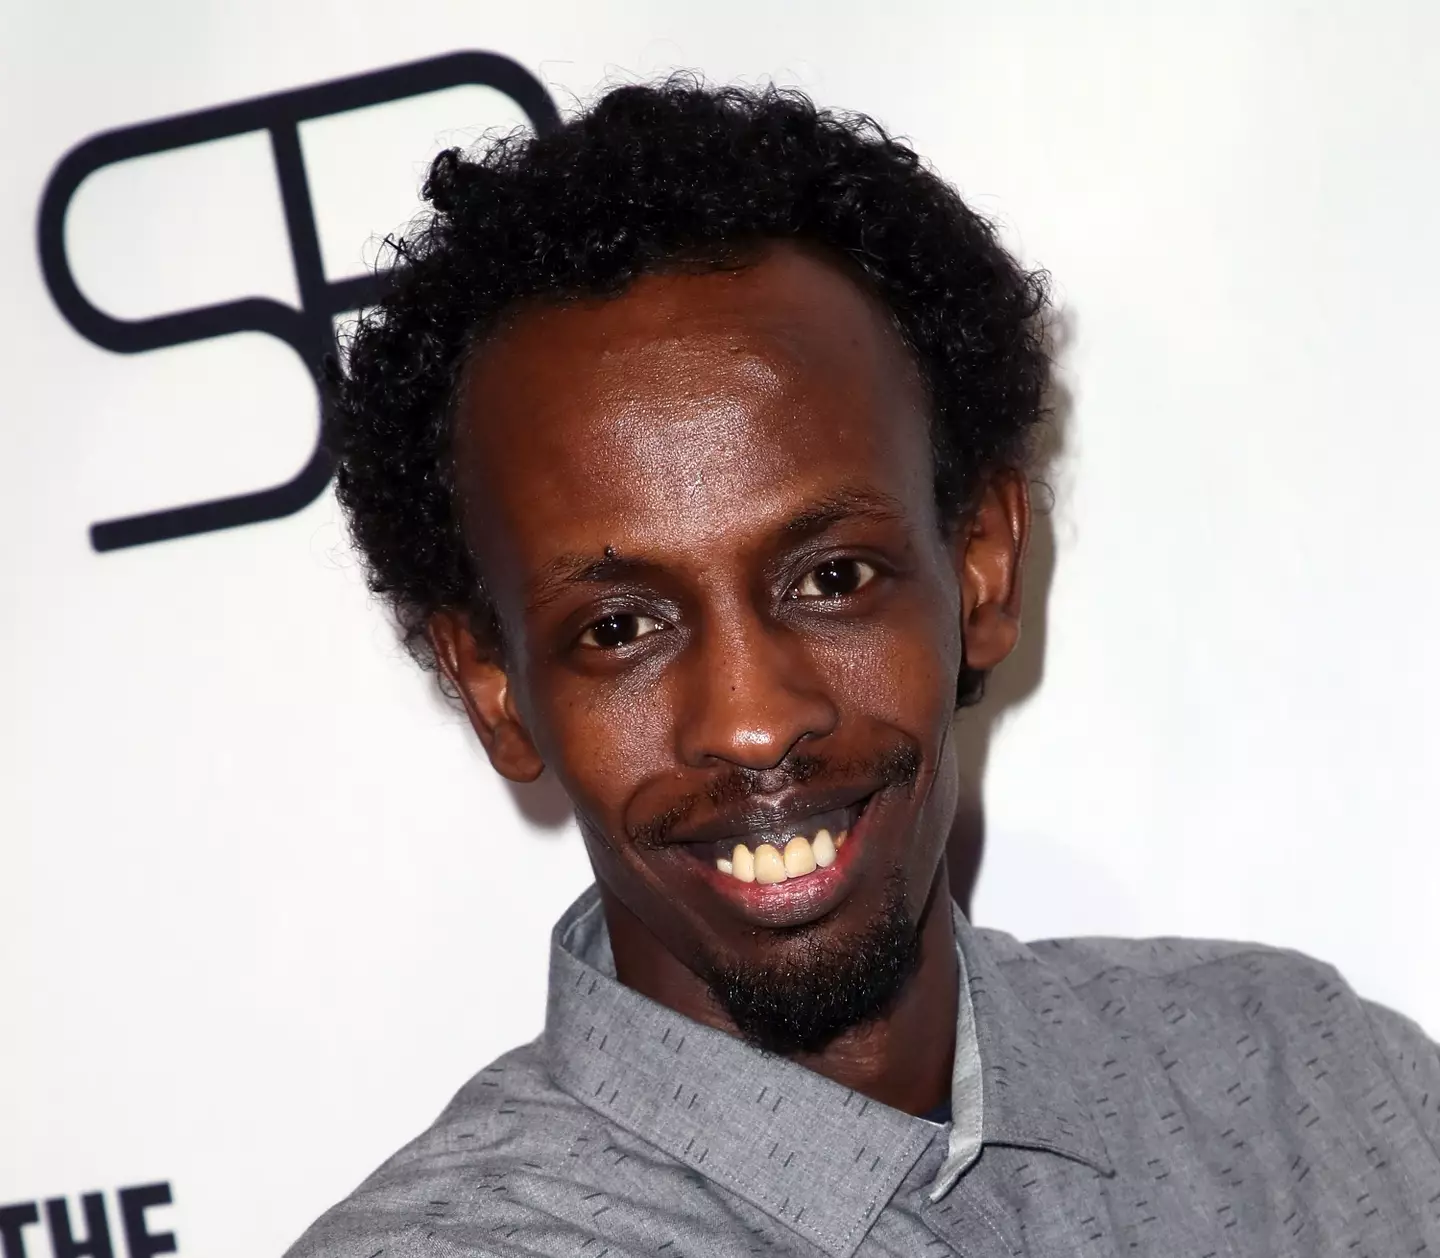 Barkhad Abdi at the premiere of The Pirates of Somalia.